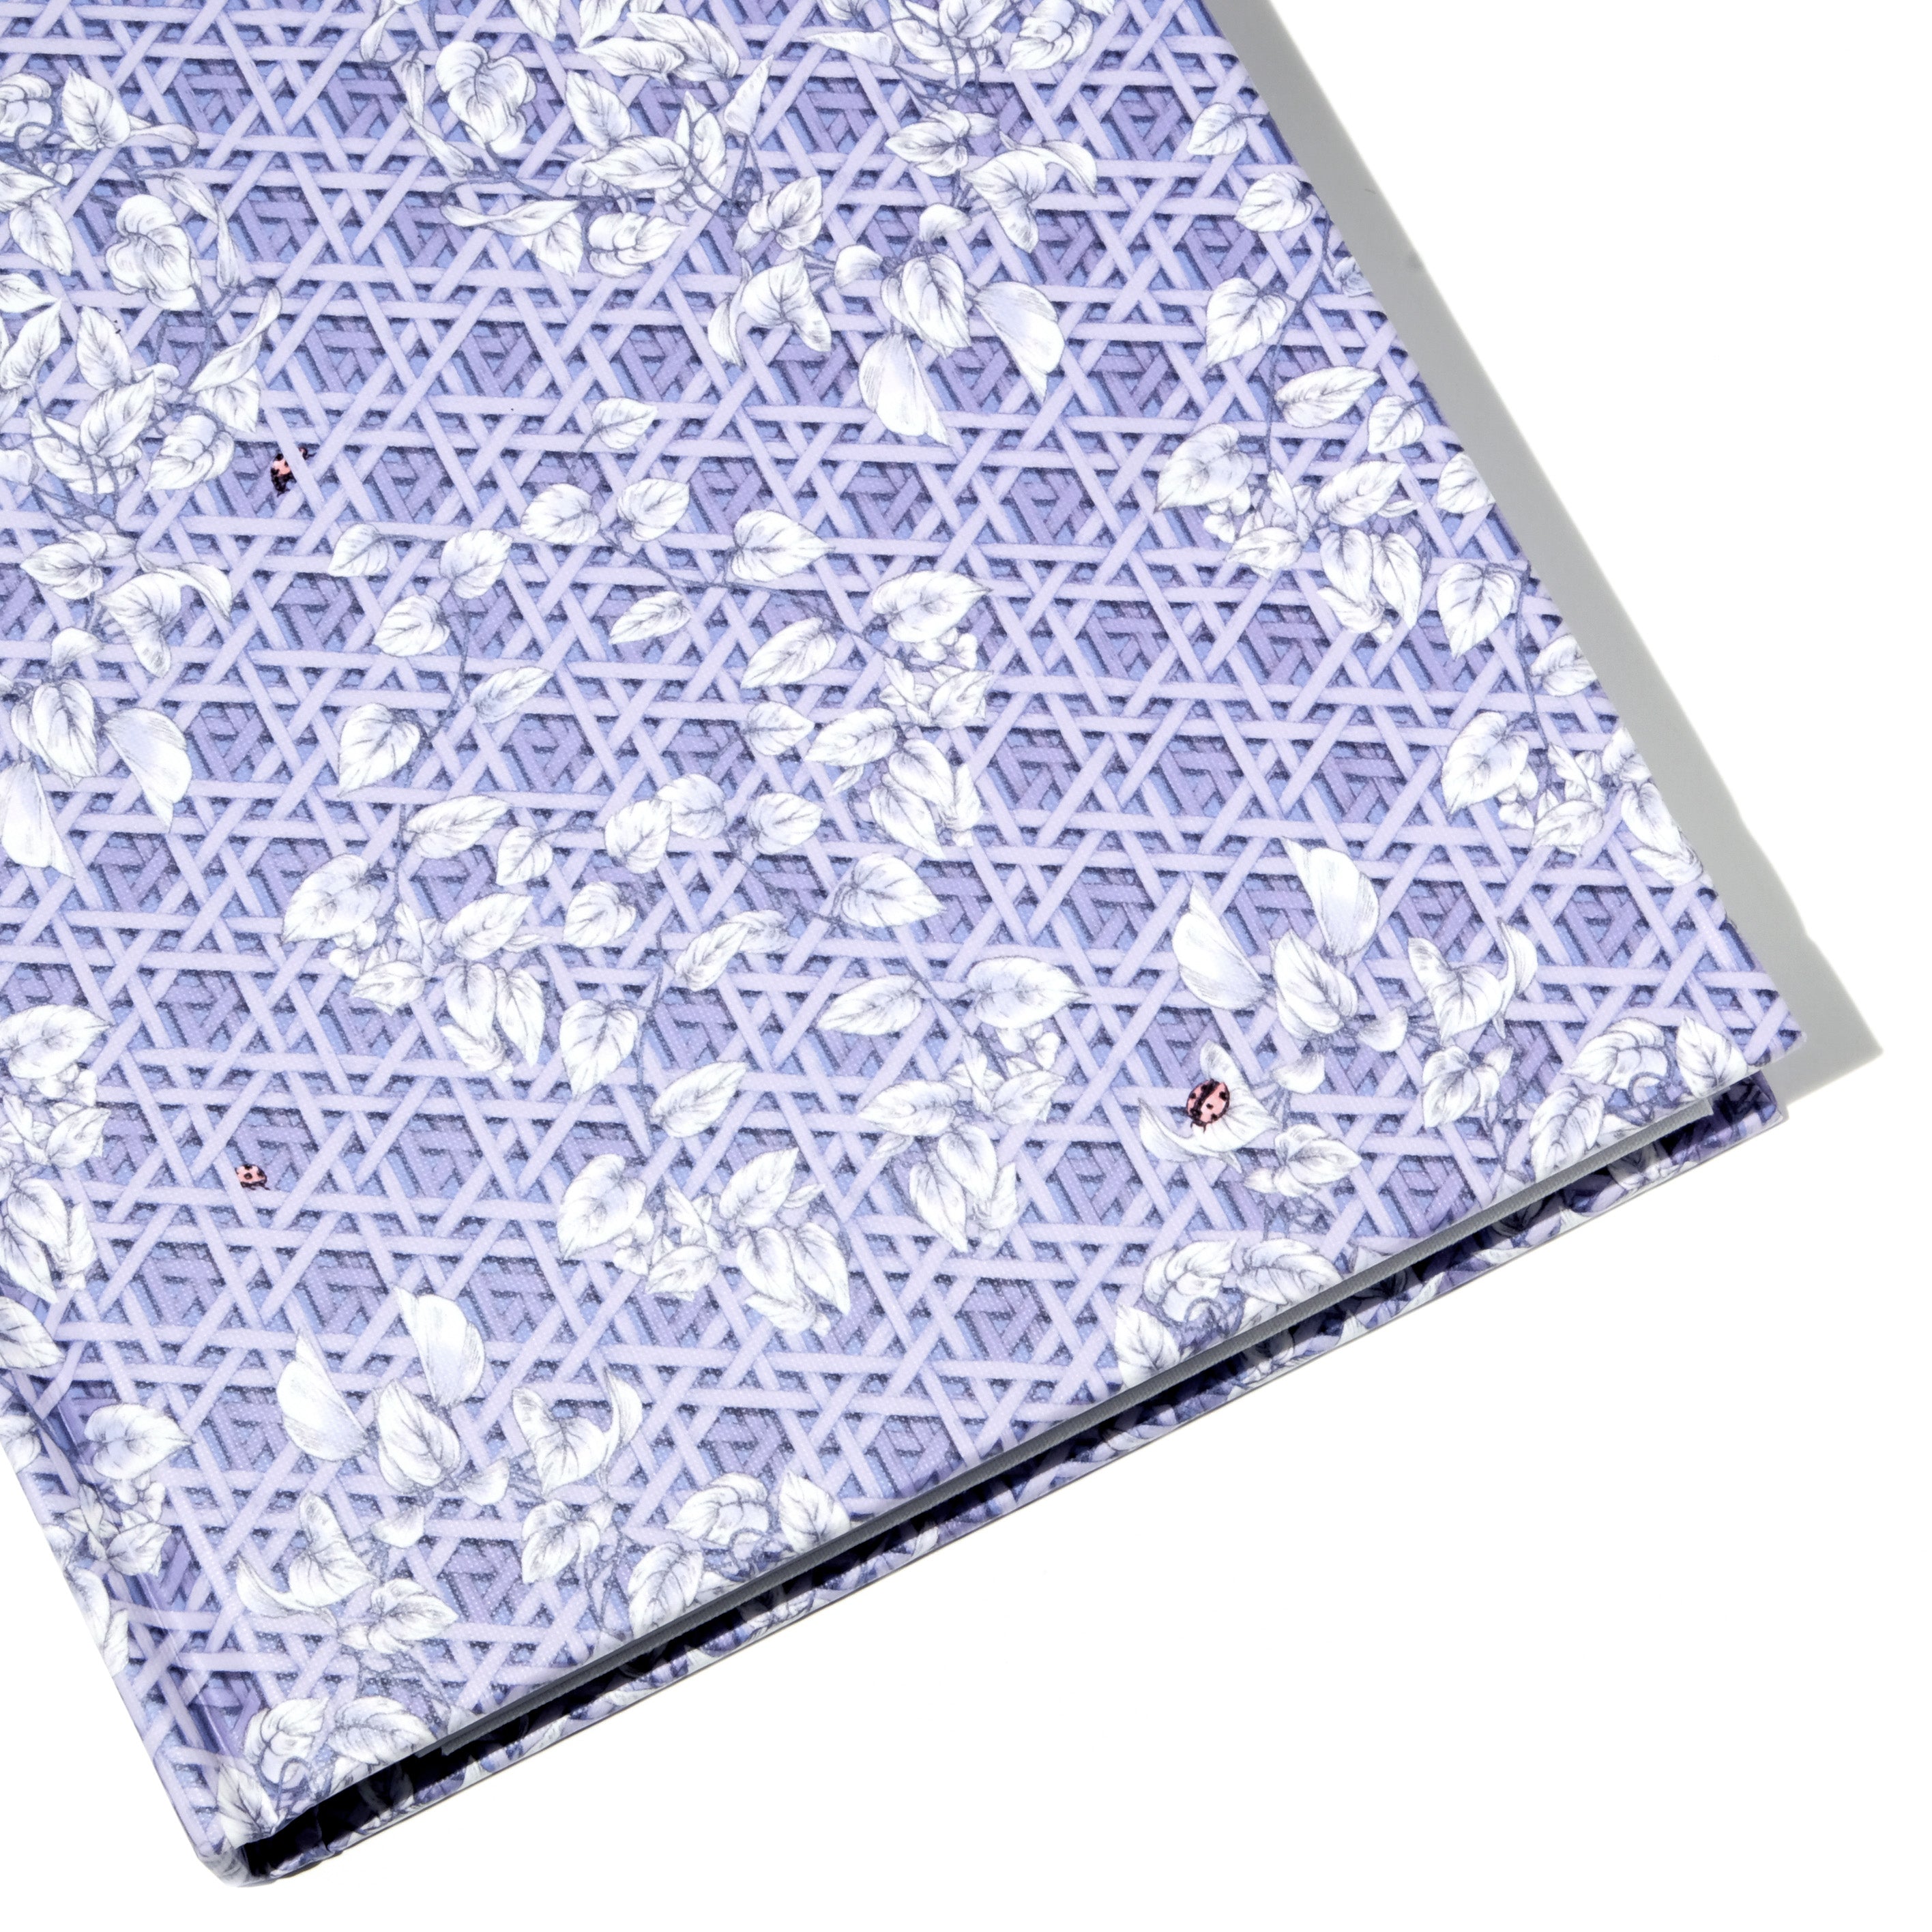 The Sketchbook A5 Enveloped in Rattan - Violet Blue